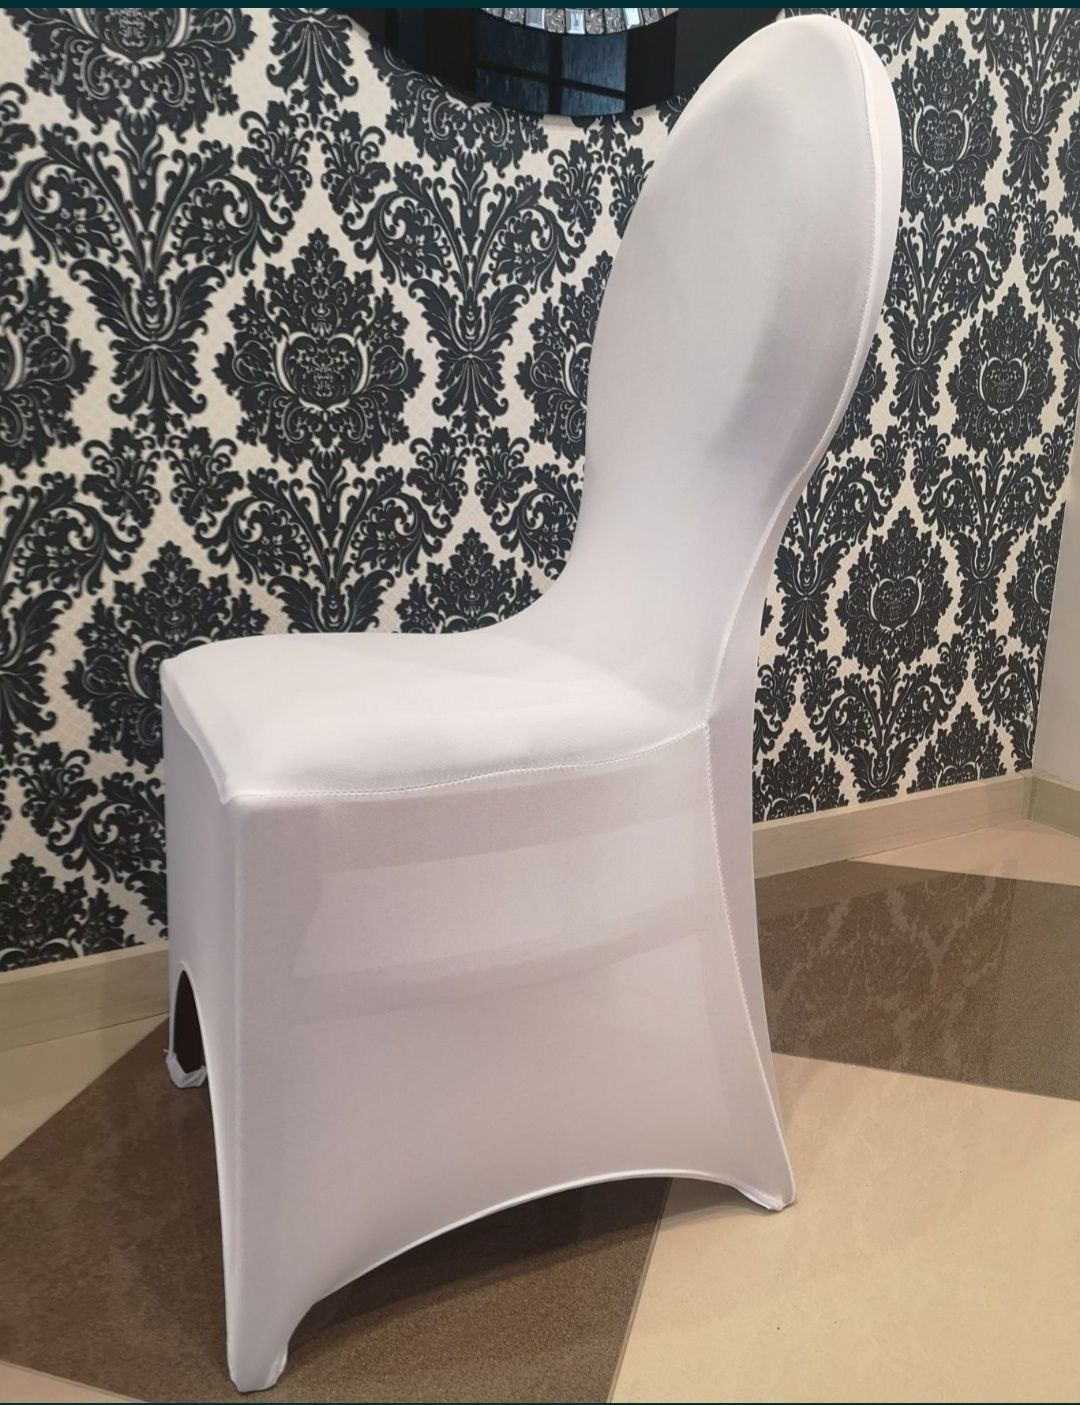 Pokrowce elastyczne komunia ślub na krzesła białe 18szt